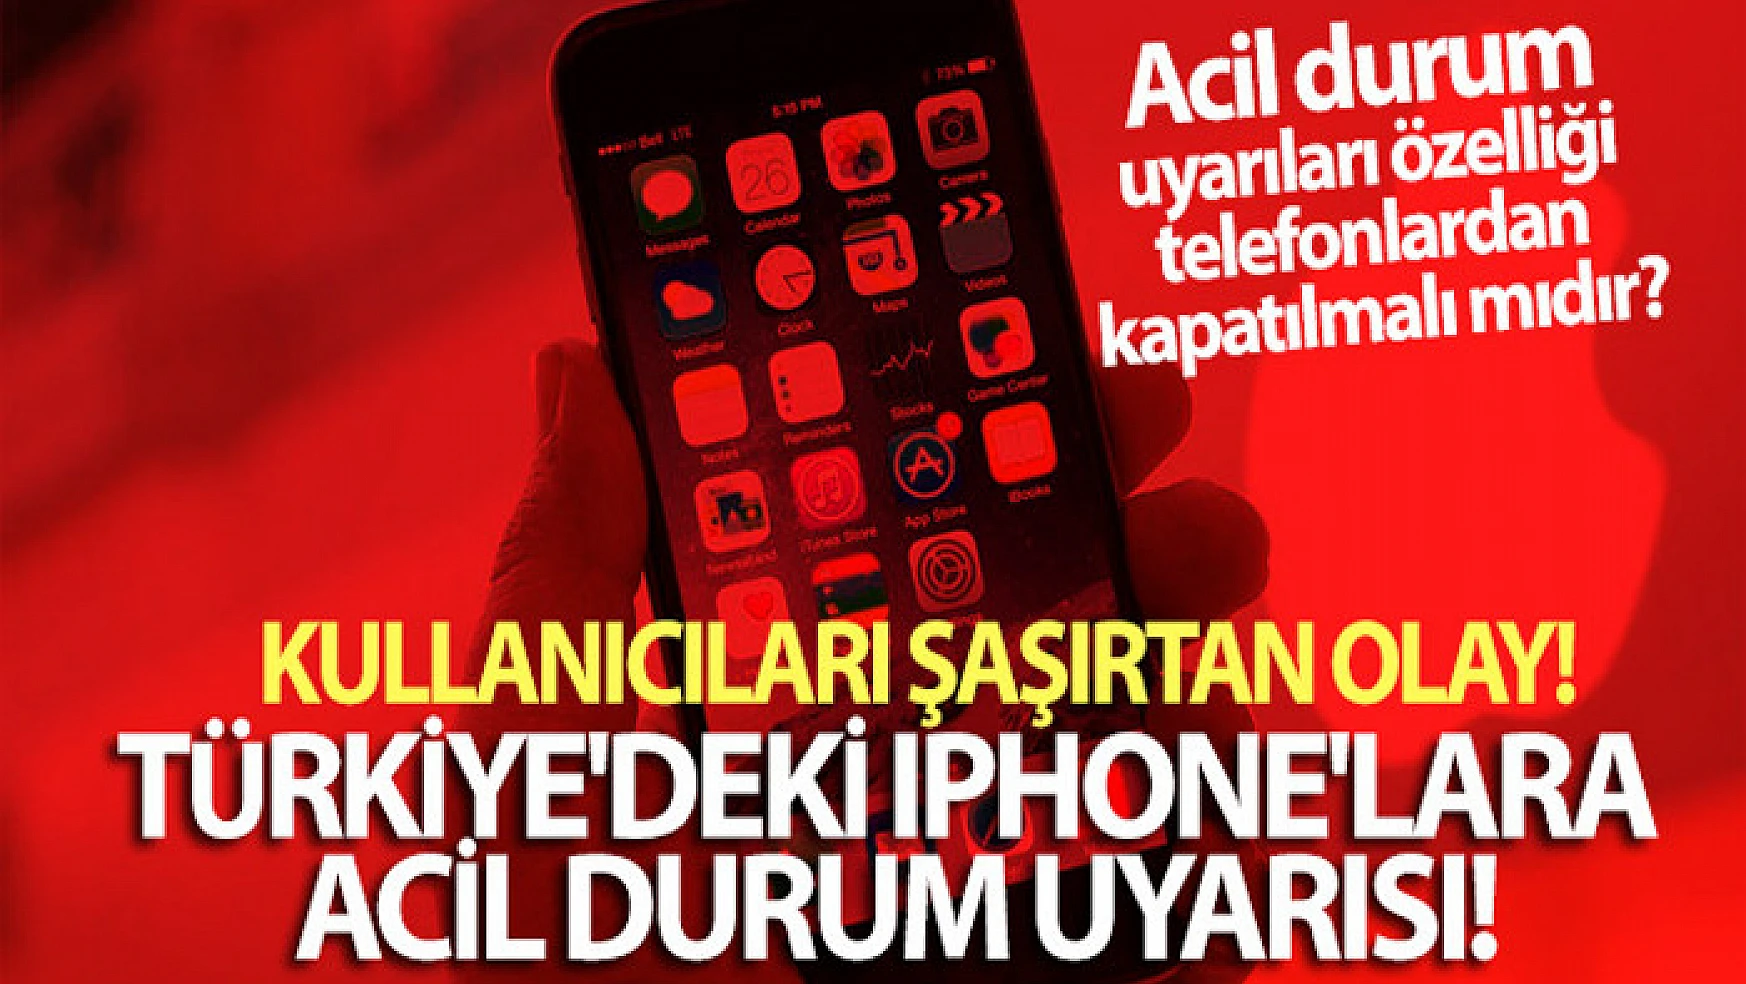 Türkiye'deki bazı iPhone'lara acil durum uyarısı! Acil durum uyarısı kapatılmalı mıdır, nasıl kapatılır?